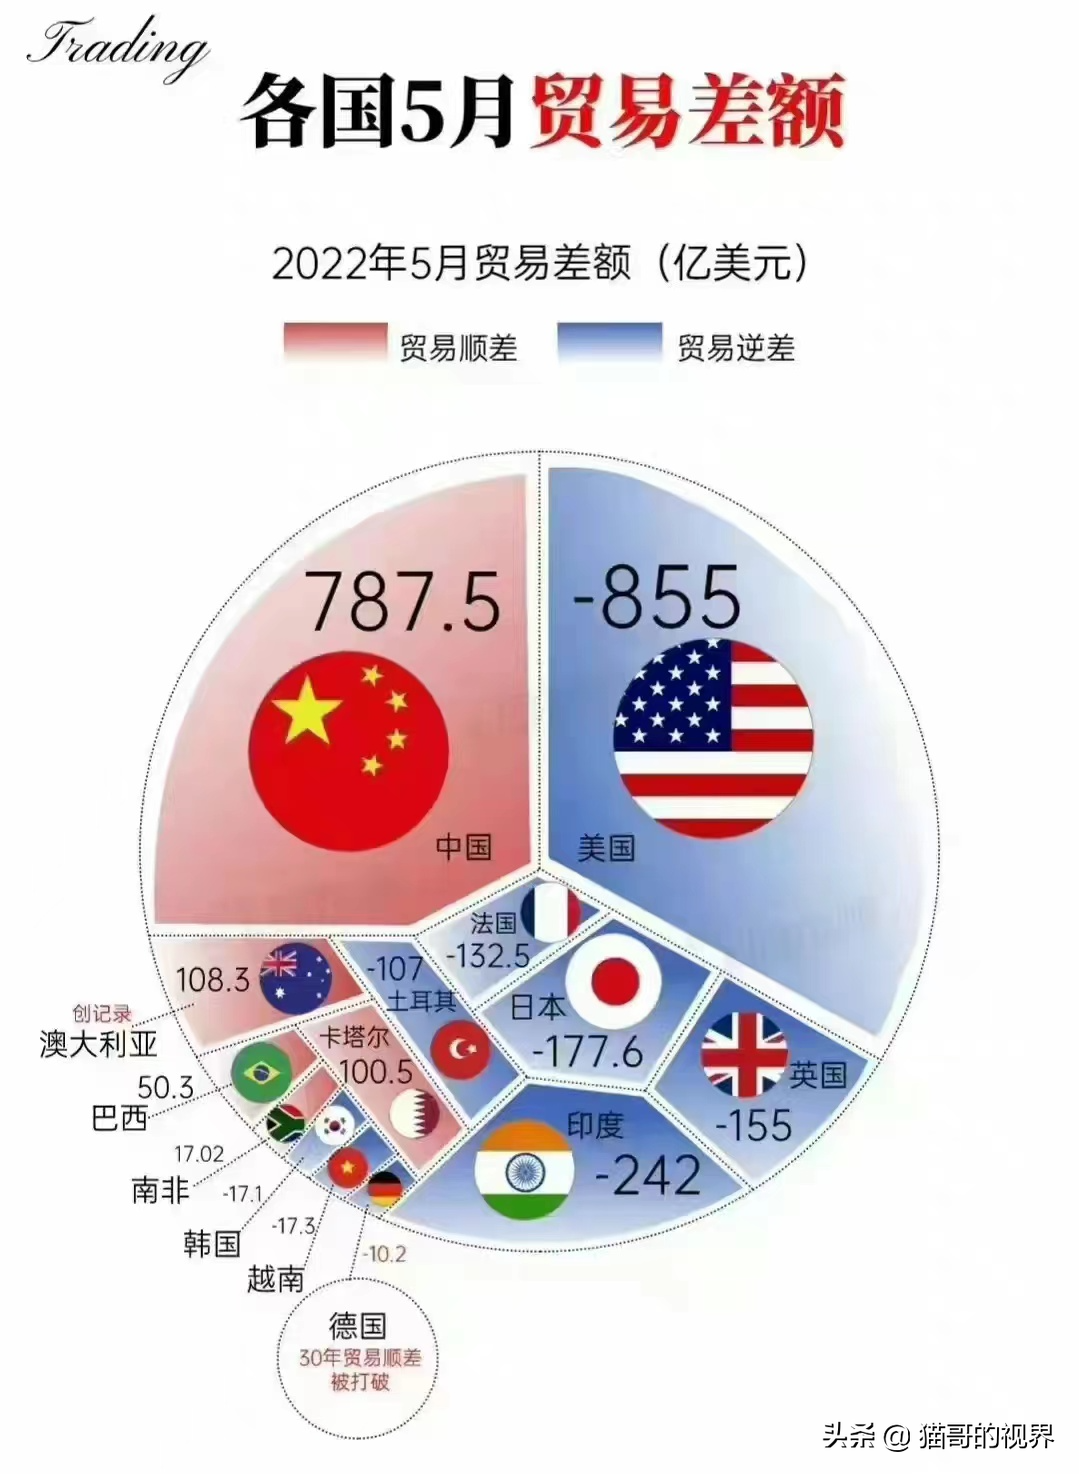 猫哥 | 全球工业国都是逆差，为啥中国是顺差，顺差还越来越大？